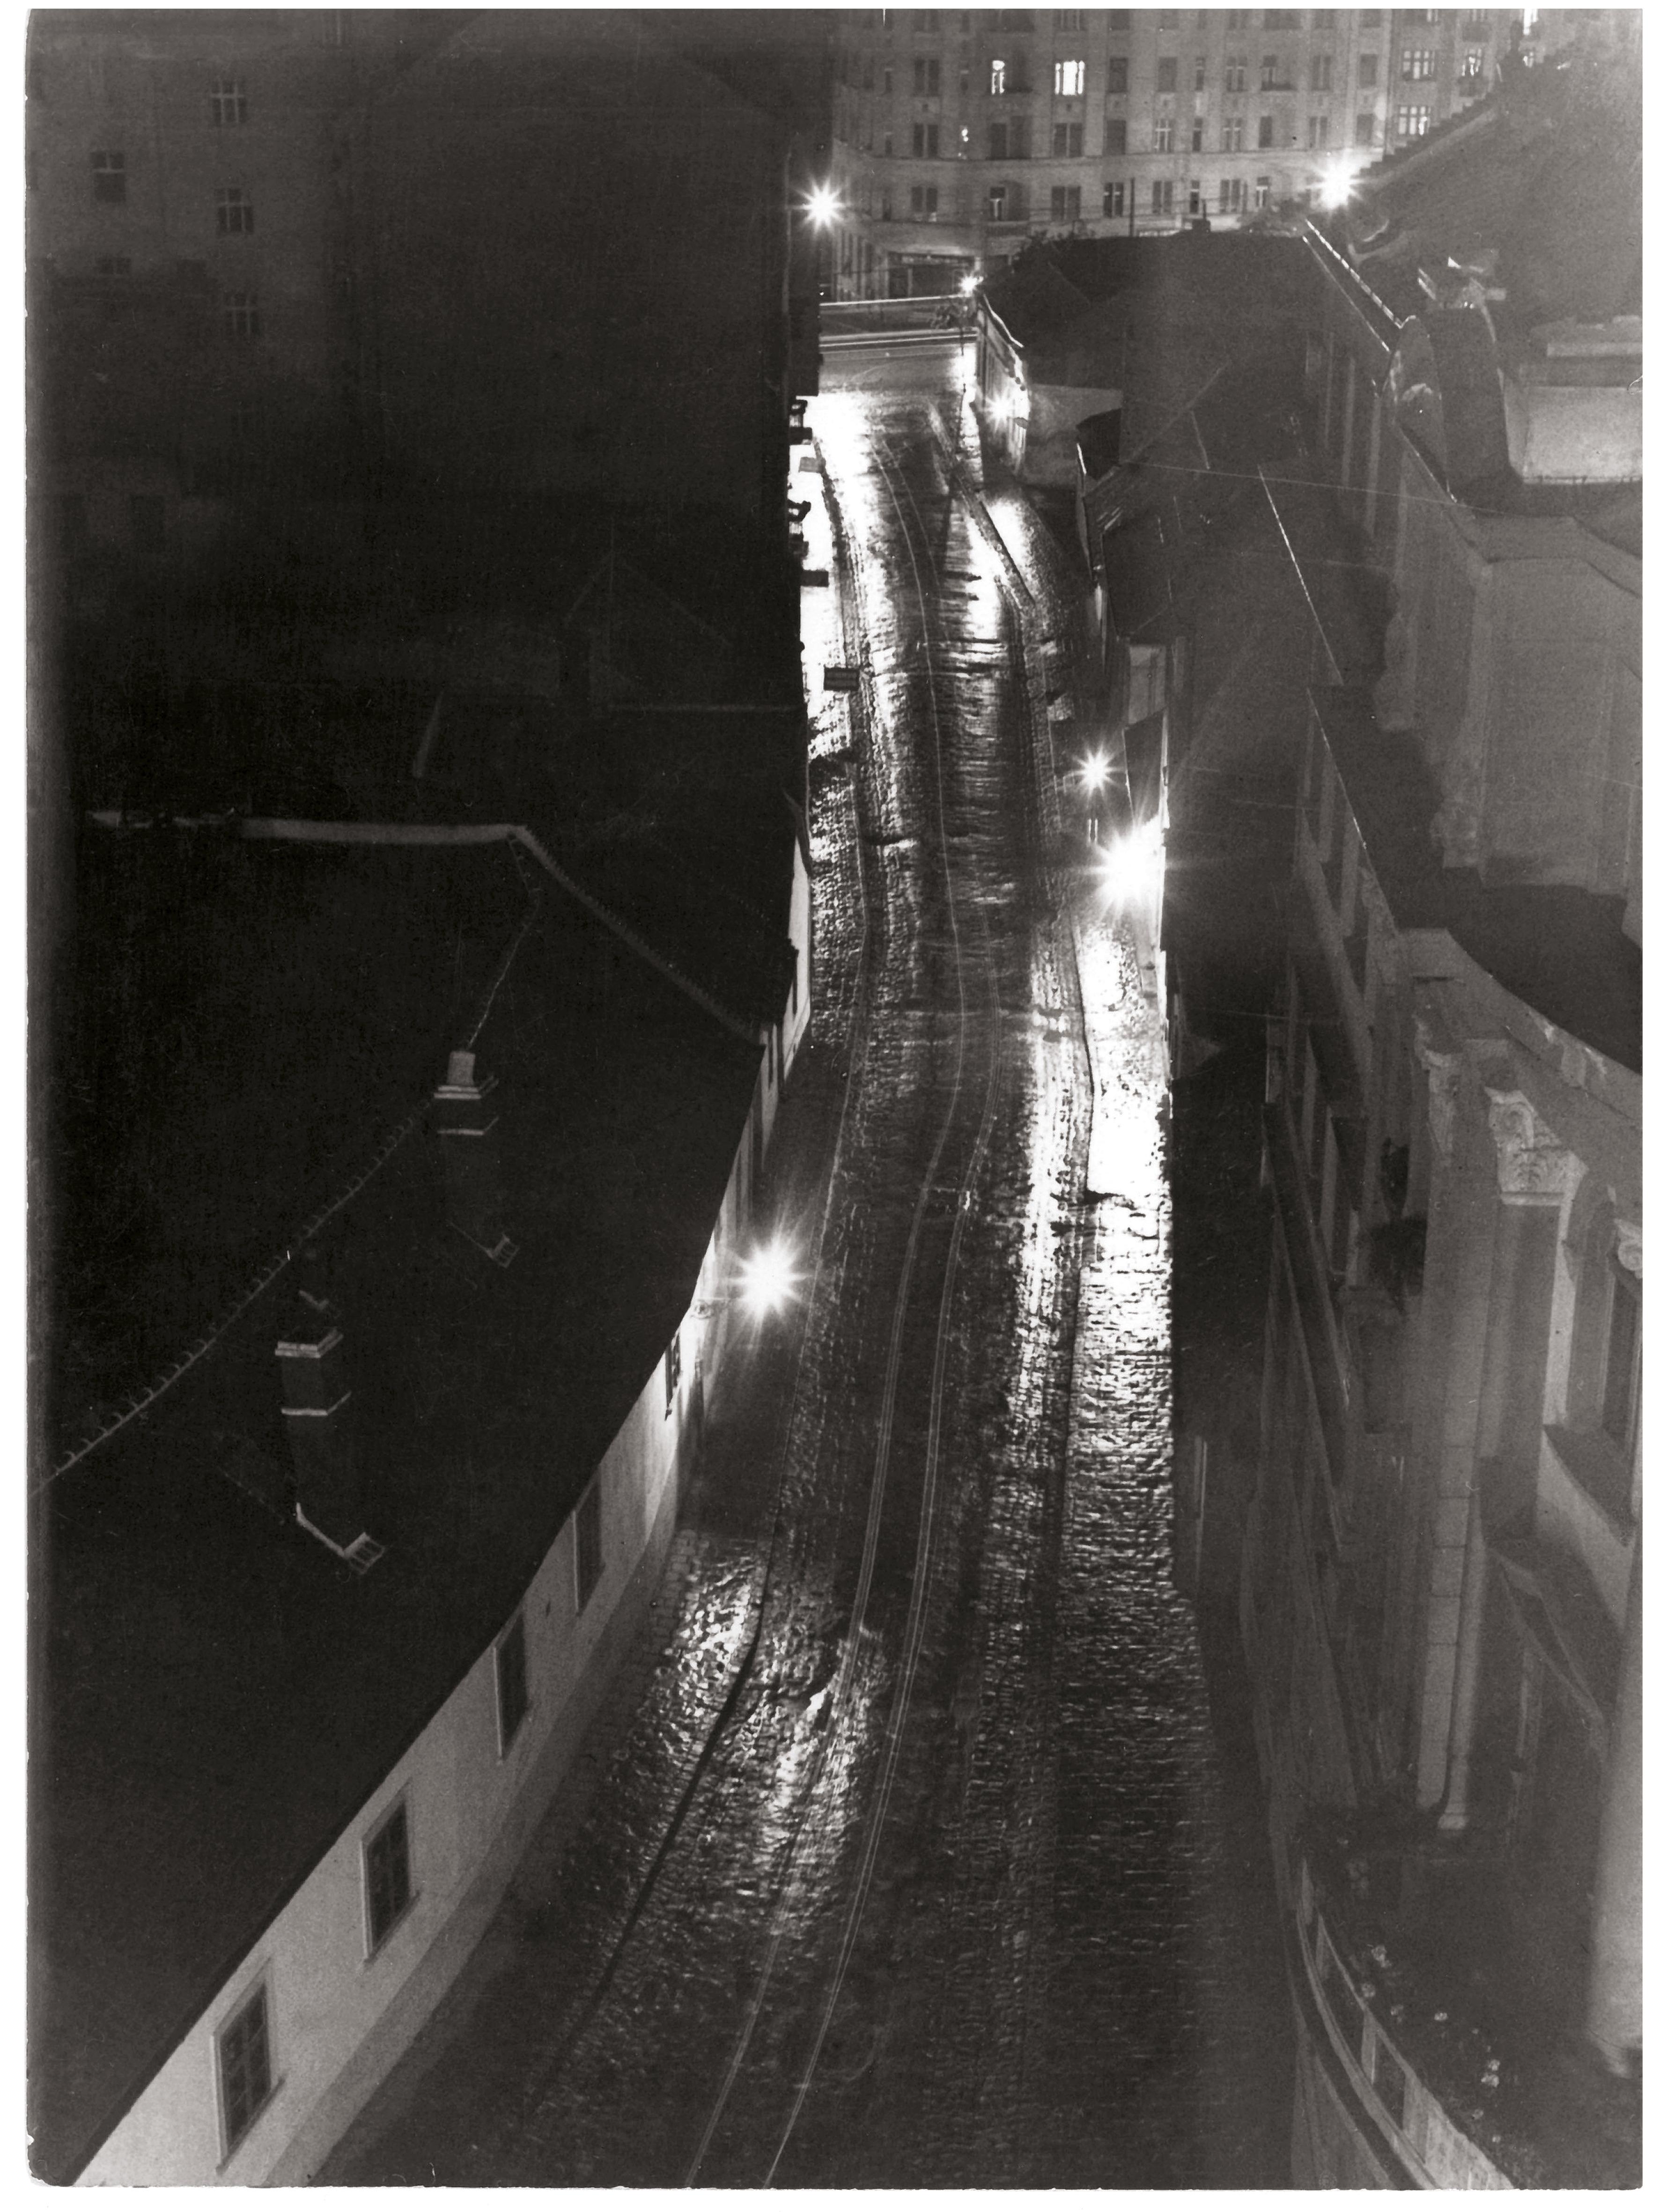 Hevesy Iván: Budai utca, éjjel, esőben, 1934-1941 zselatinos ezüst papírkép, Medve Mihály gyűjteménye